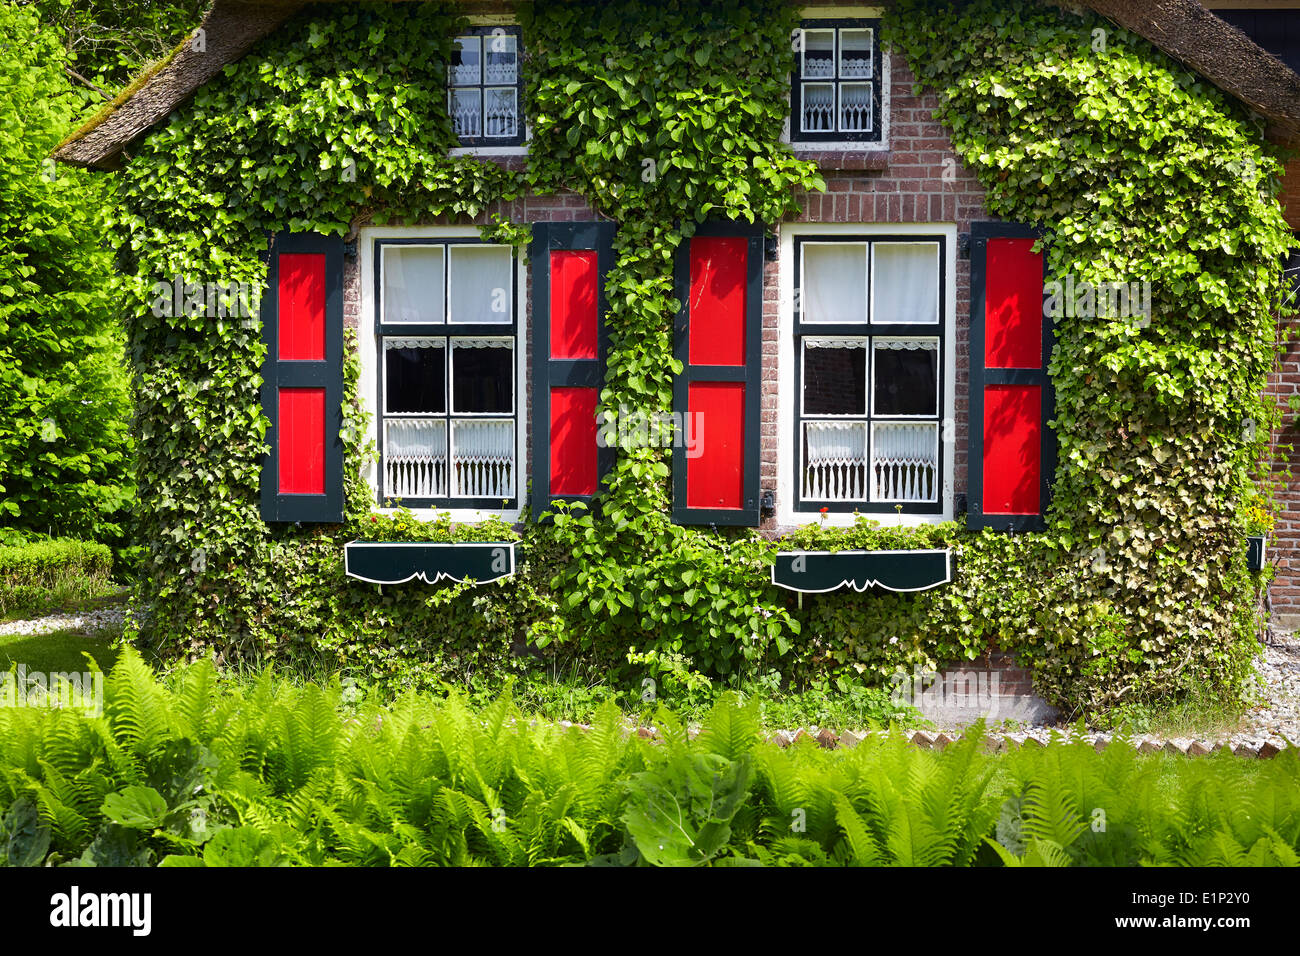 Giethoorn village - Hollande Pays-Bas Banque D'Images